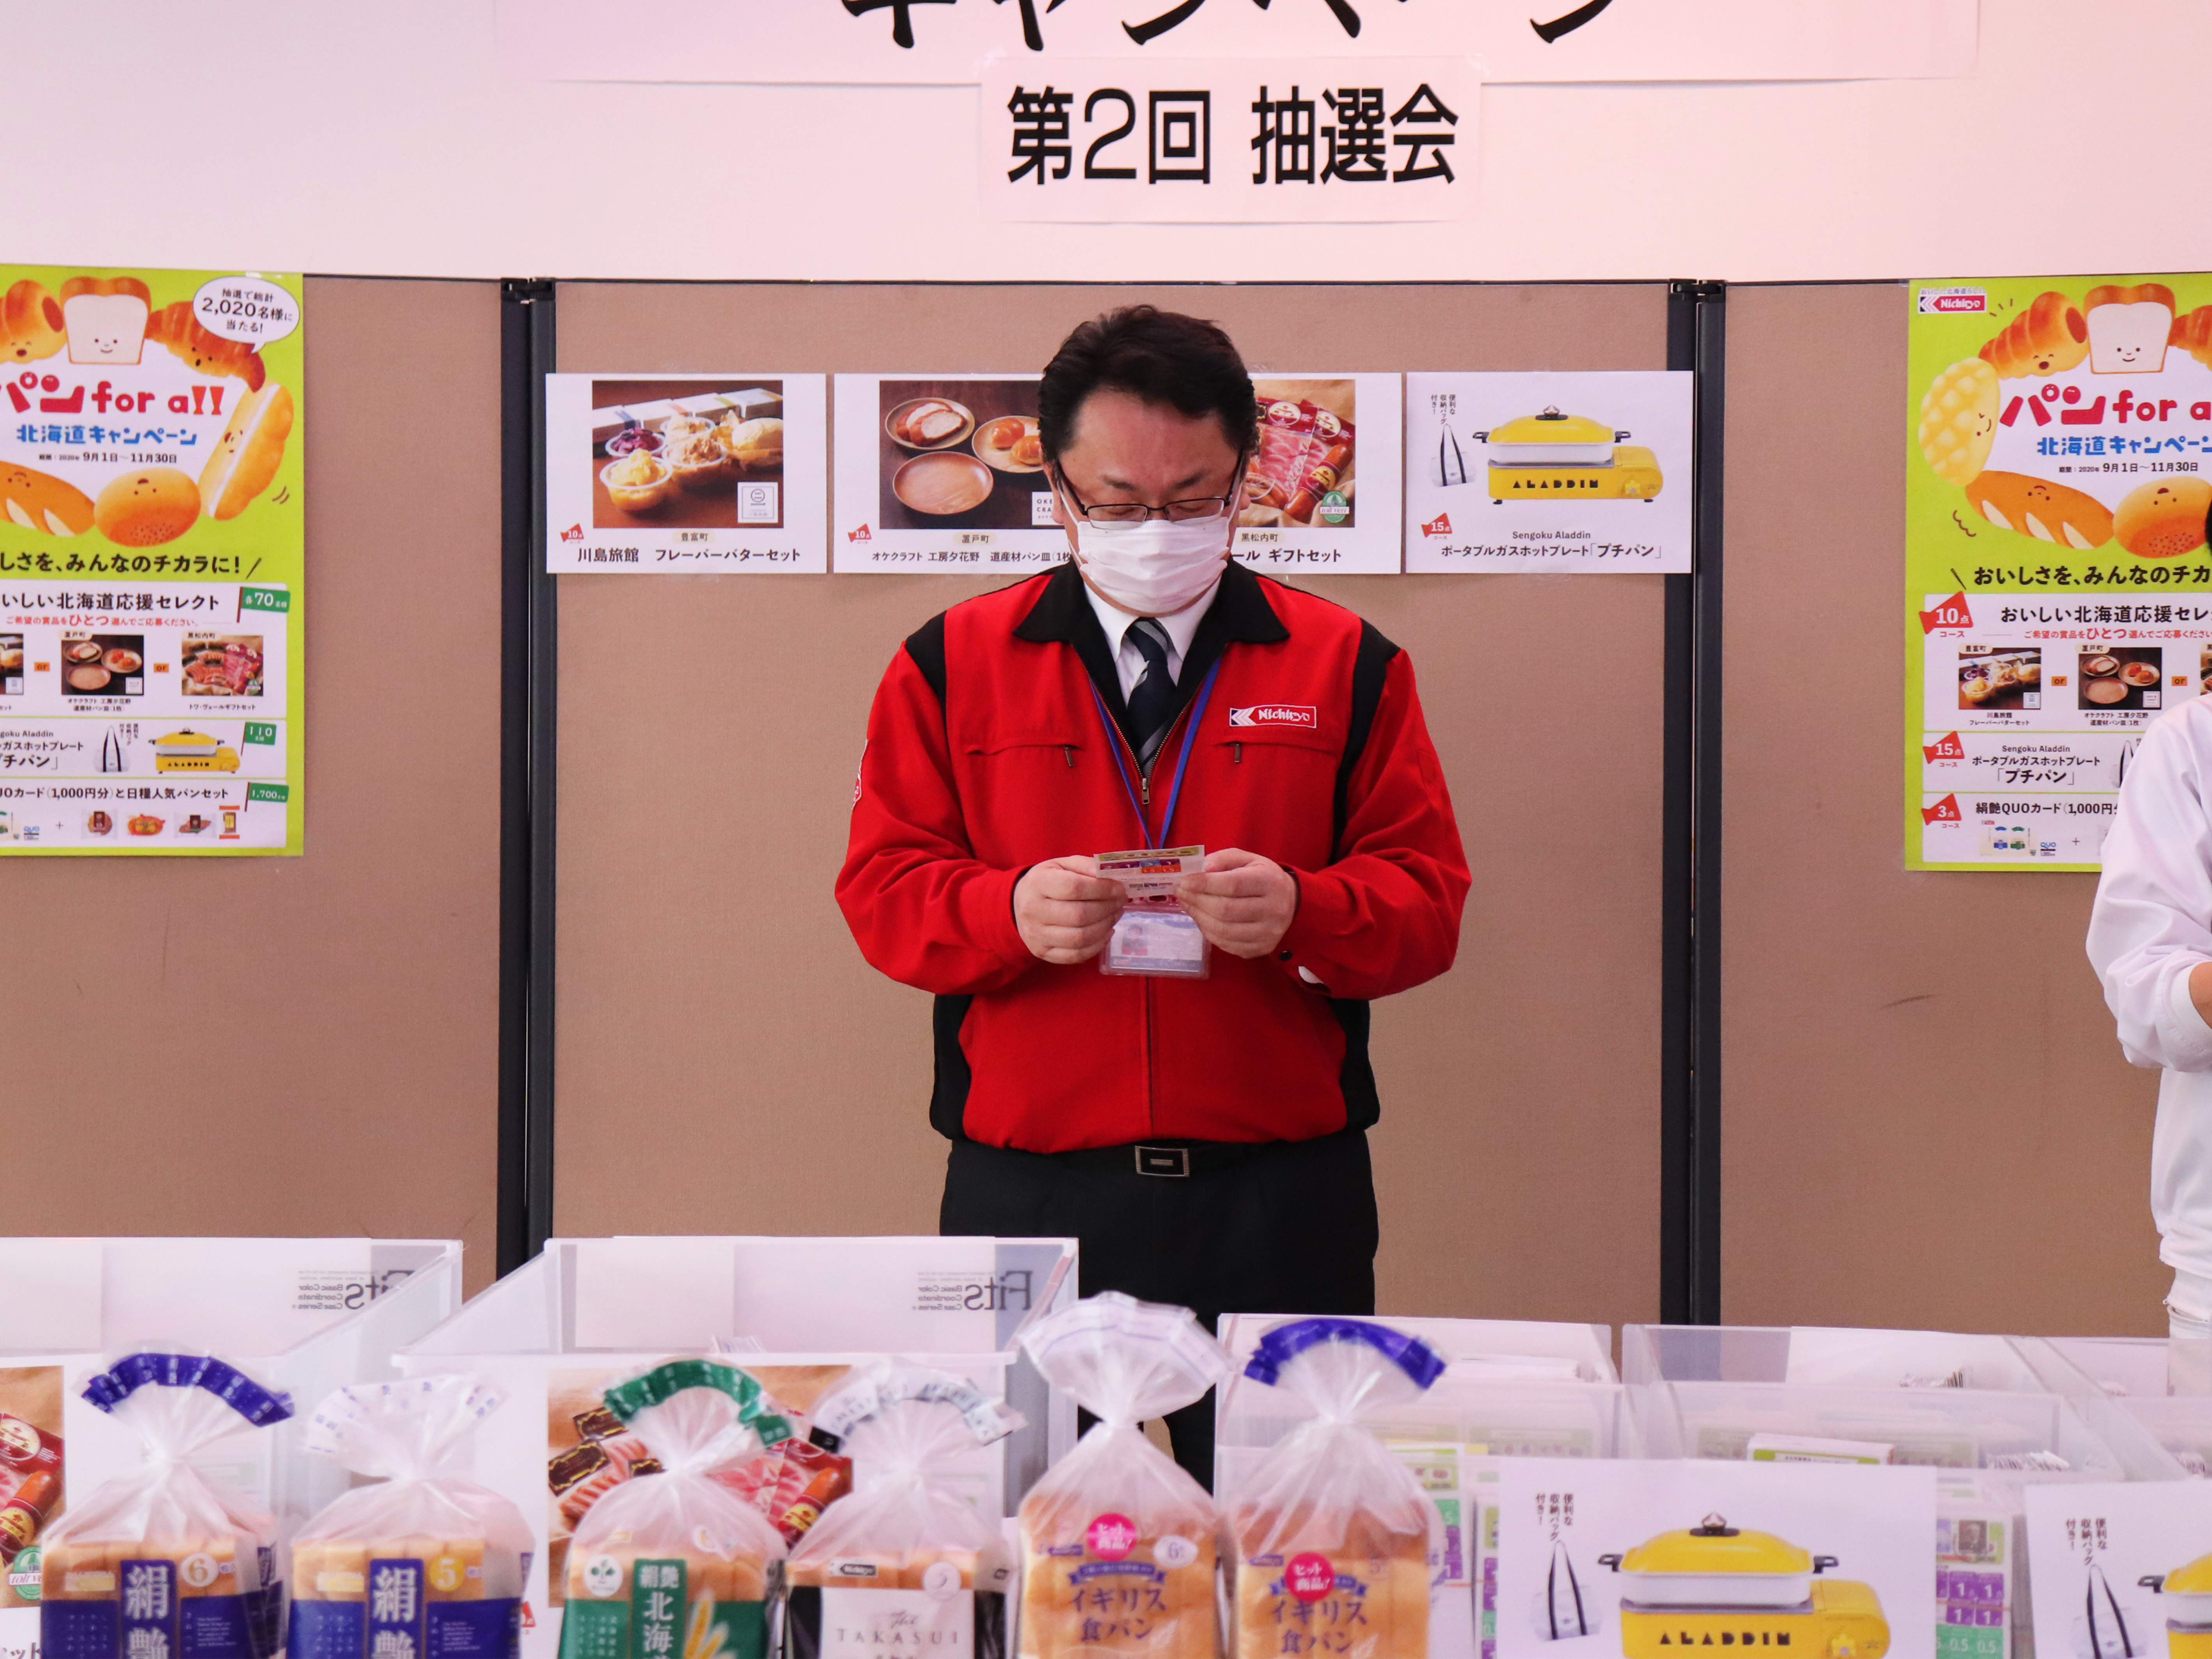 パン for all 北海道キャンペーン』第2回 抽選会 | 日糧製パン株式会社